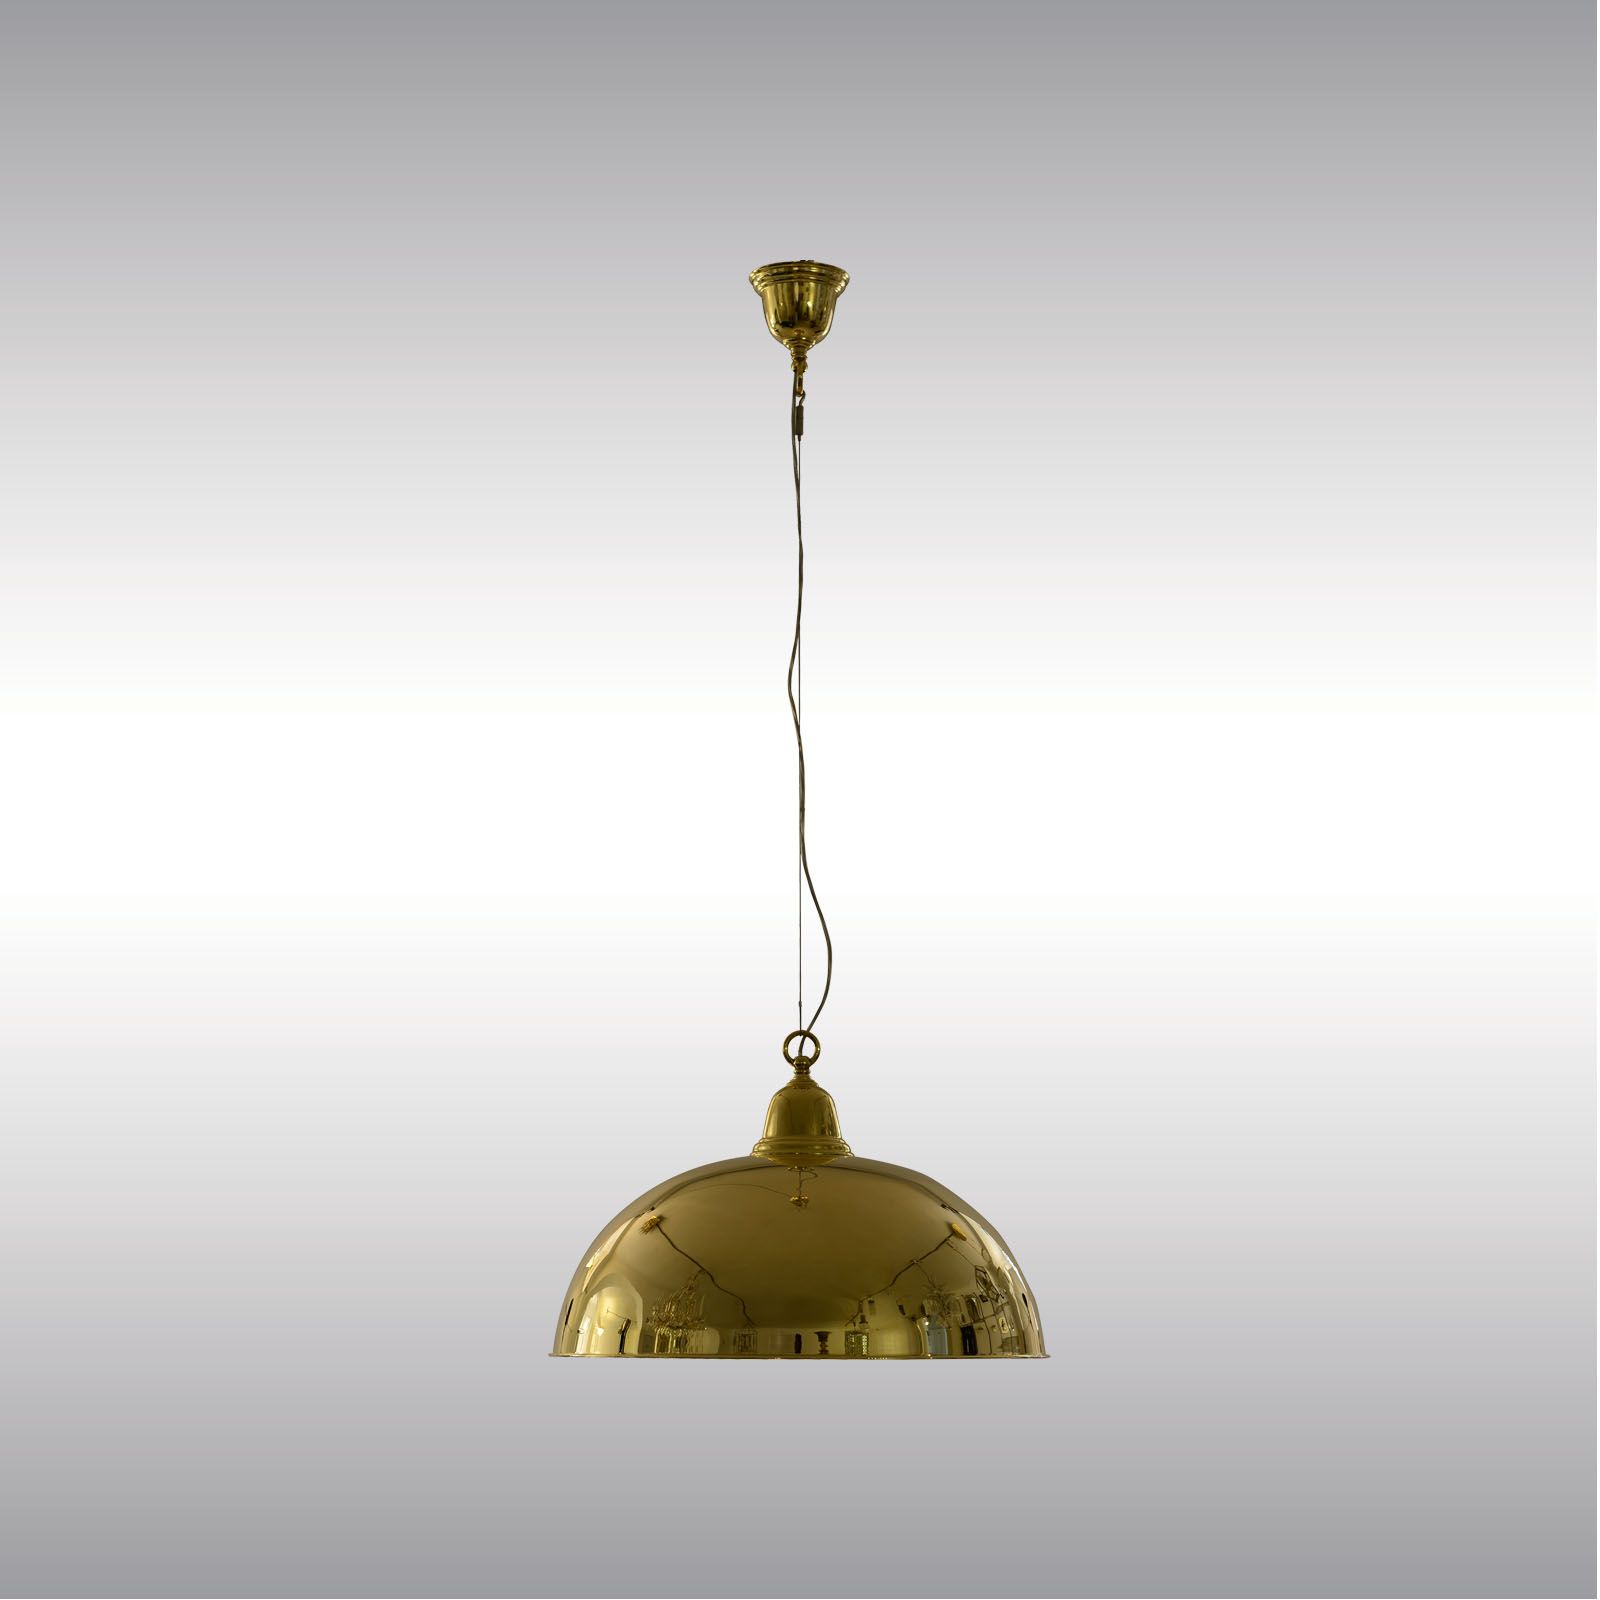 WOKA LAMPS VIENNA - OrderNr.: 21405|Looshaus Comptoir 50 - Design: Adolf Loos